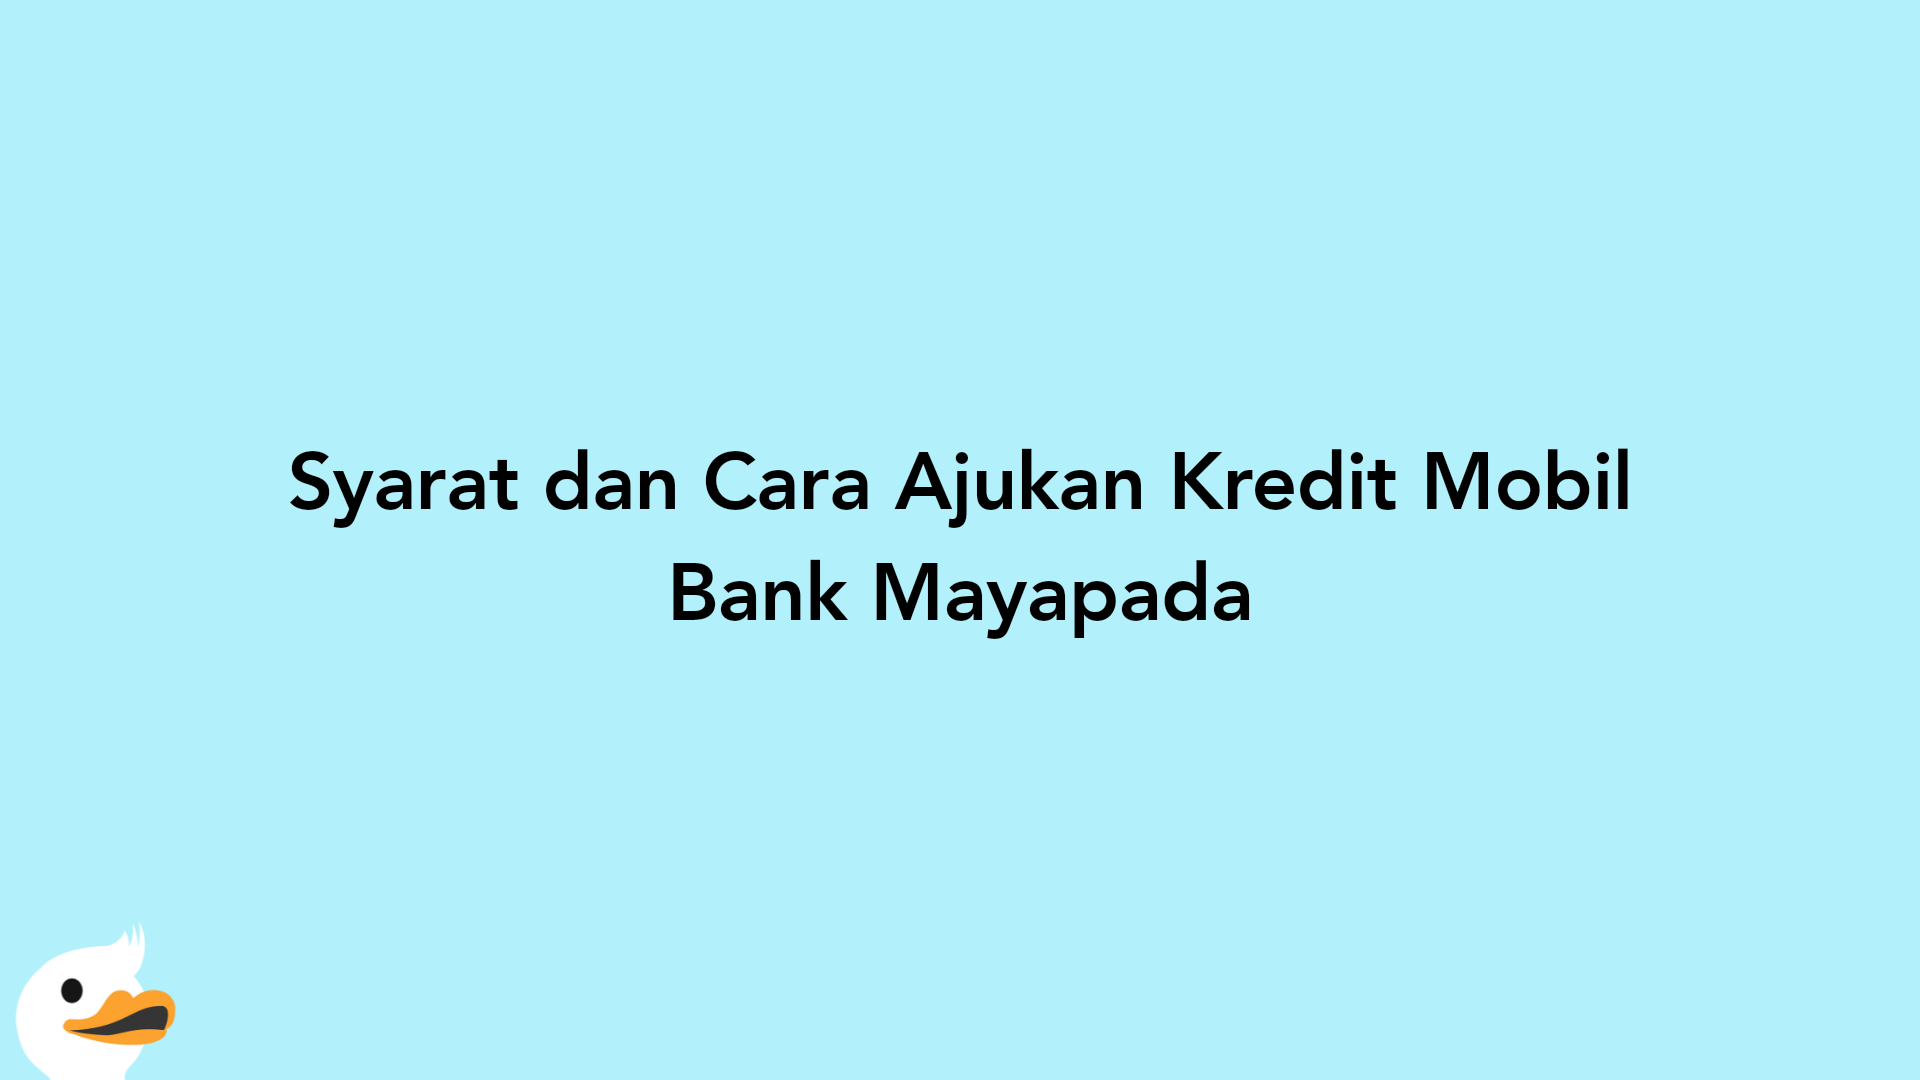 Syarat dan Cara Ajukan Kredit Mobil Bank Mayapada